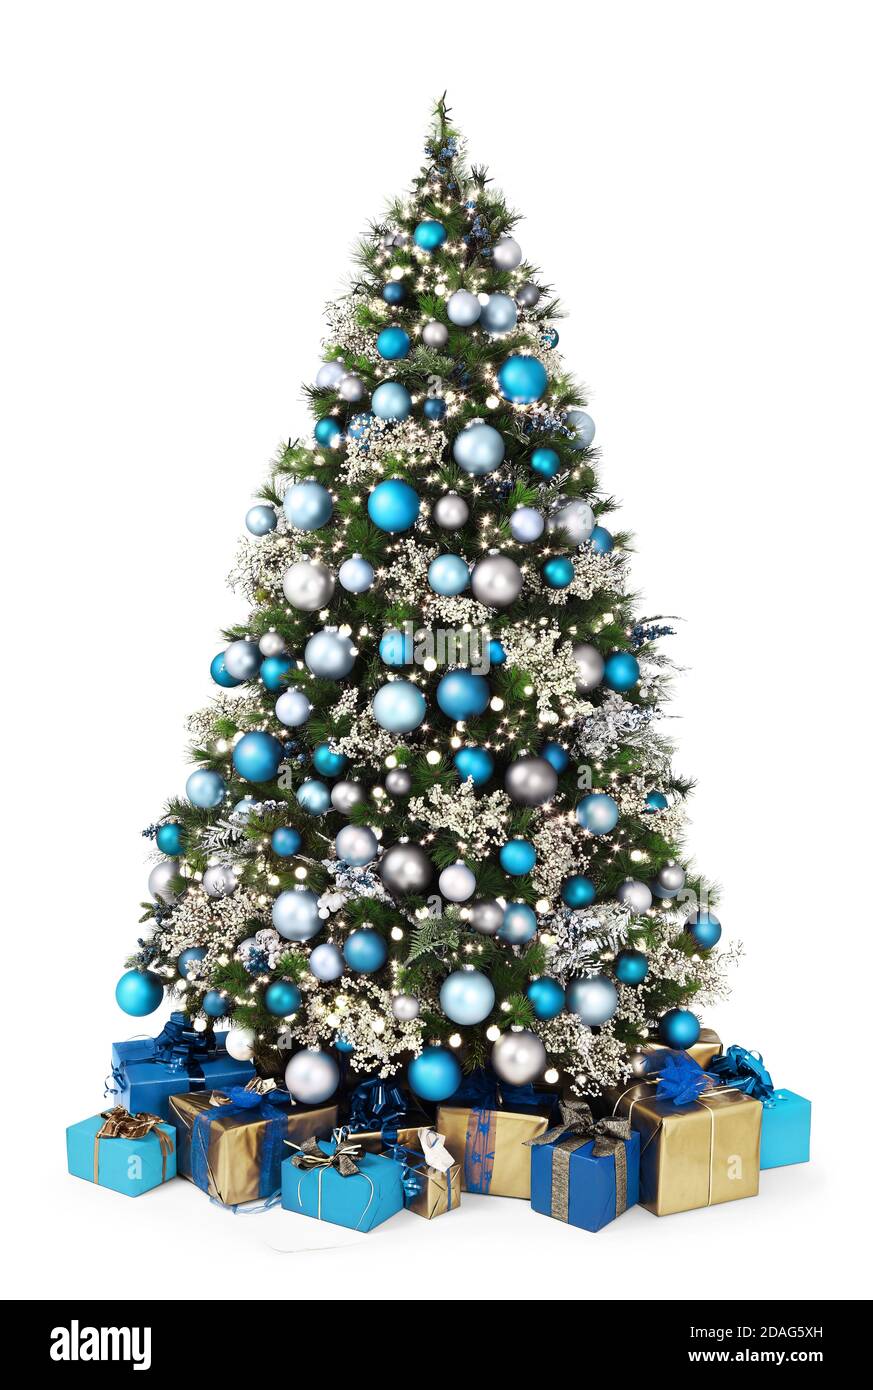 Geschmückter weihnachtsbaum voller blauer und silberner Kugeln, Dekorationen und viele Geschenkverpackungen isoliert auf weißem Hintergrund Stockfoto